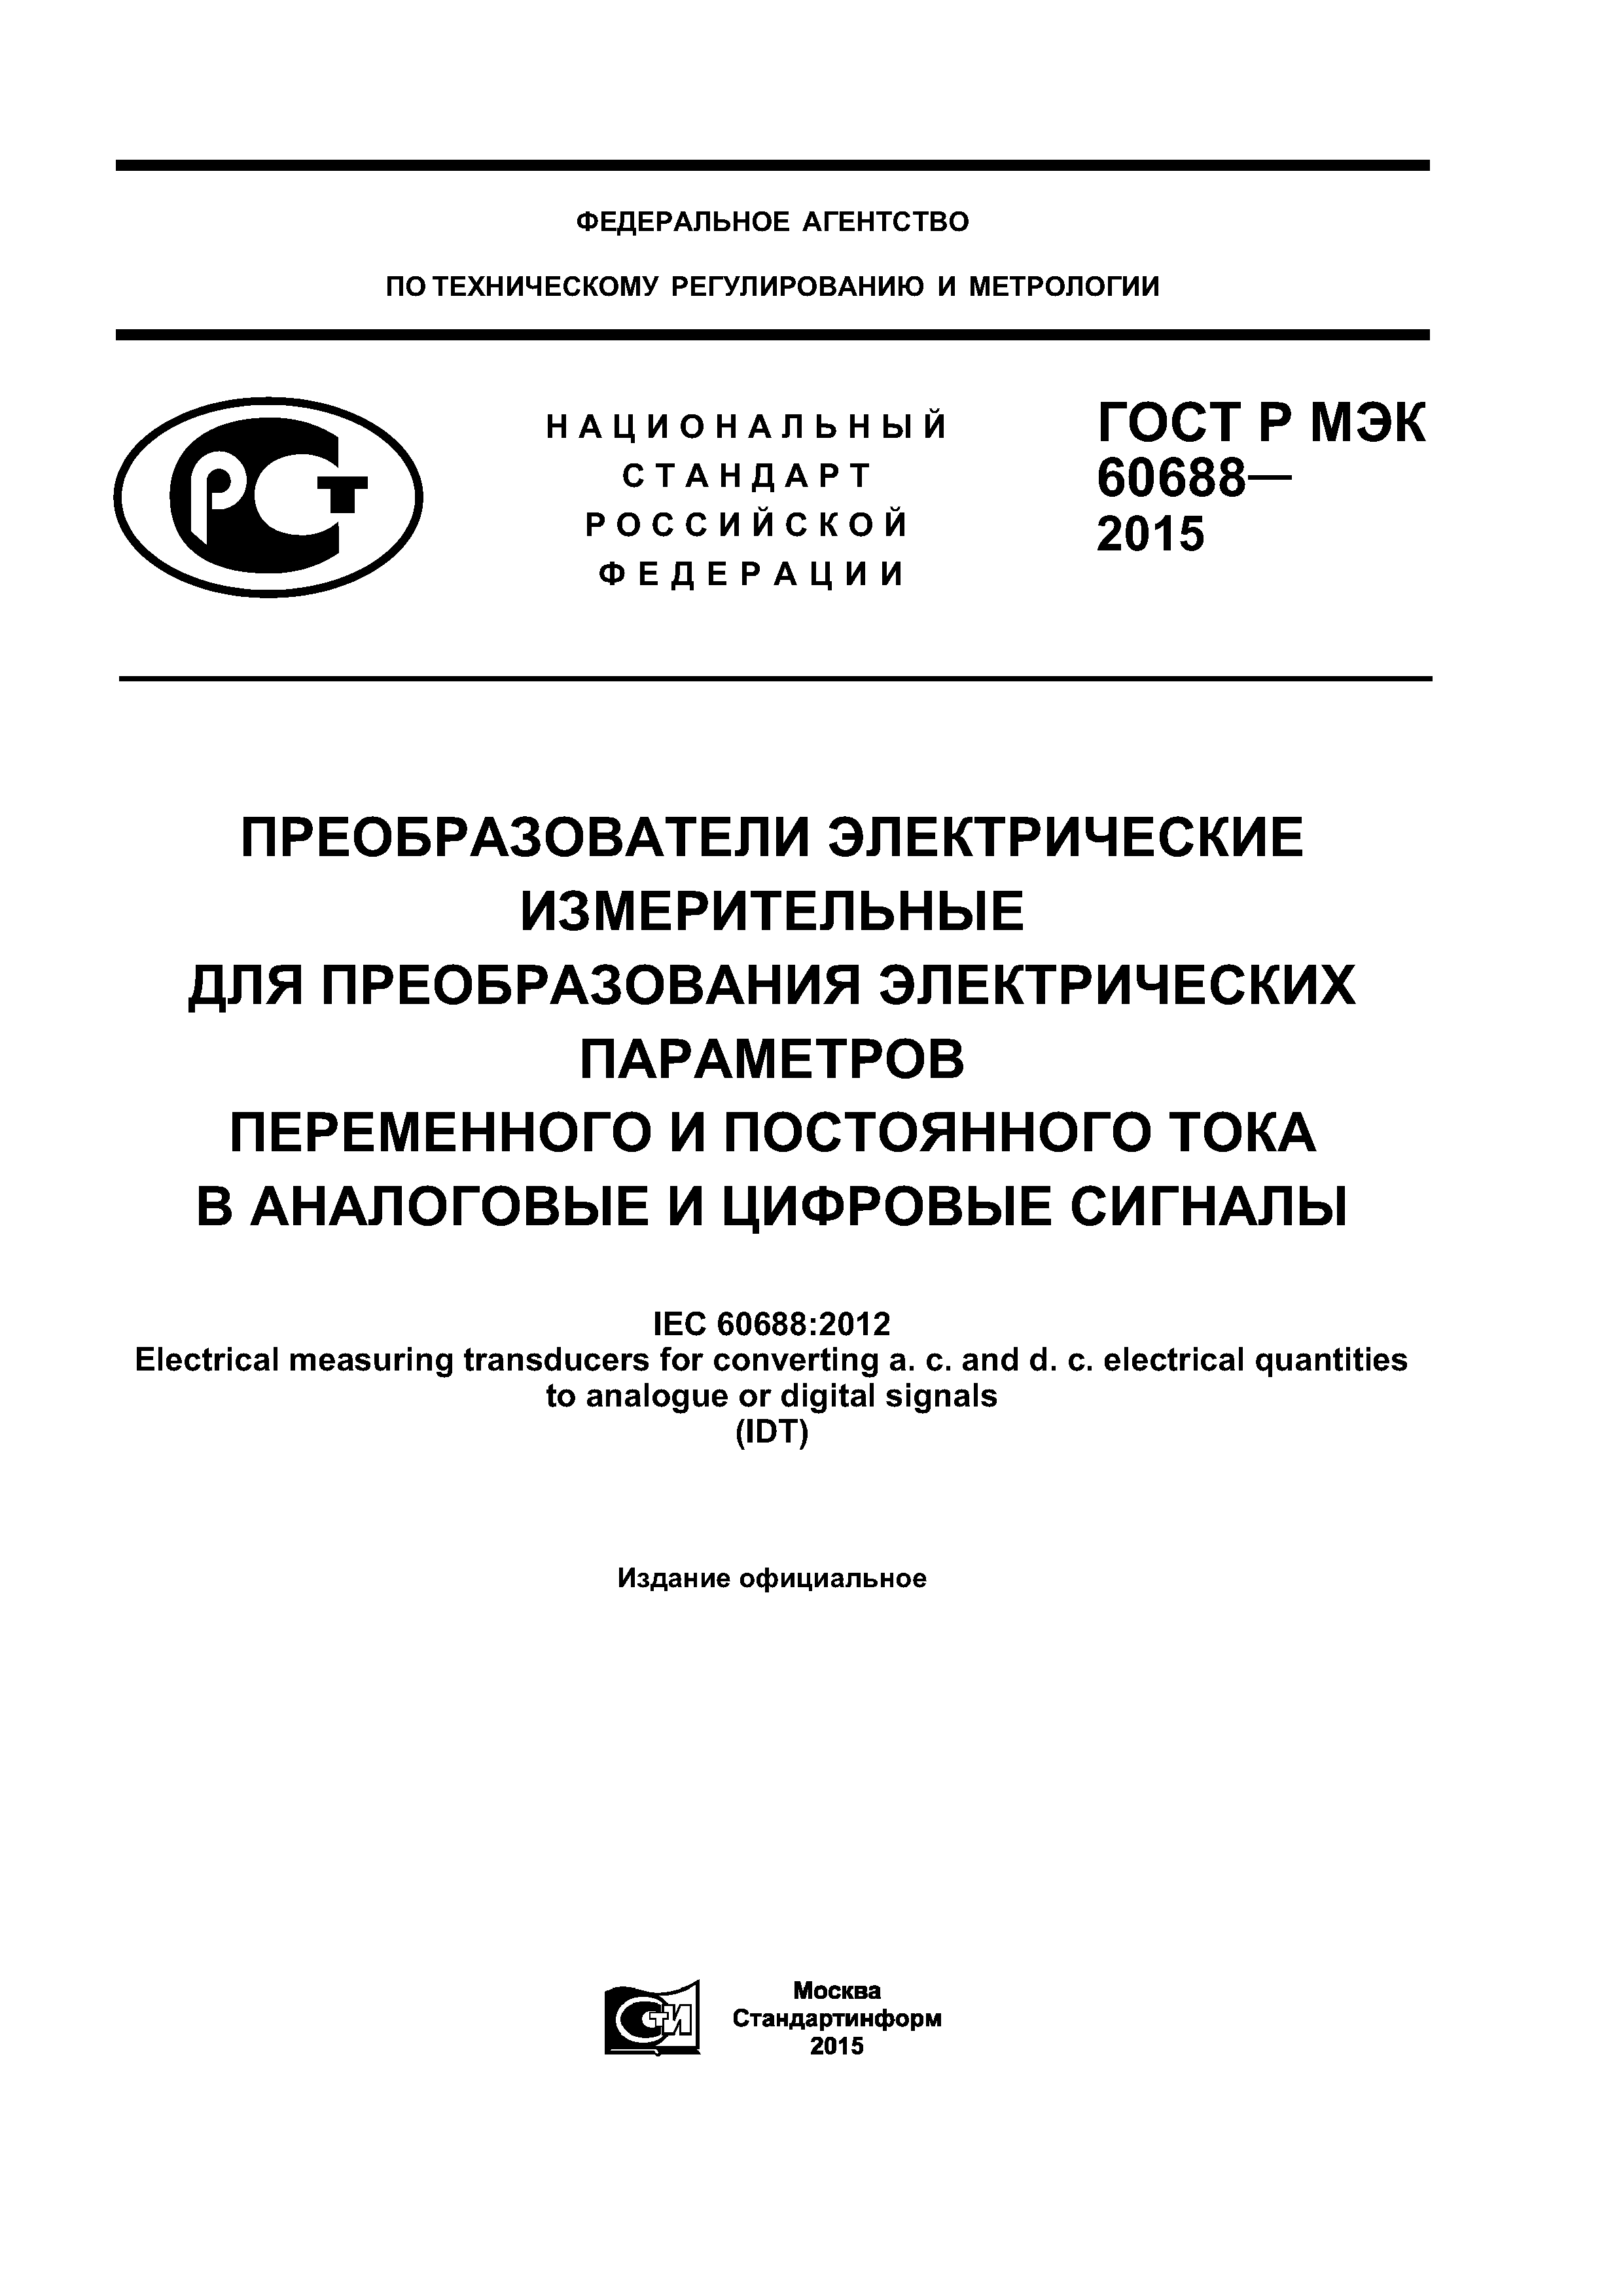 ГОСТ Р МЭК 60688-2015